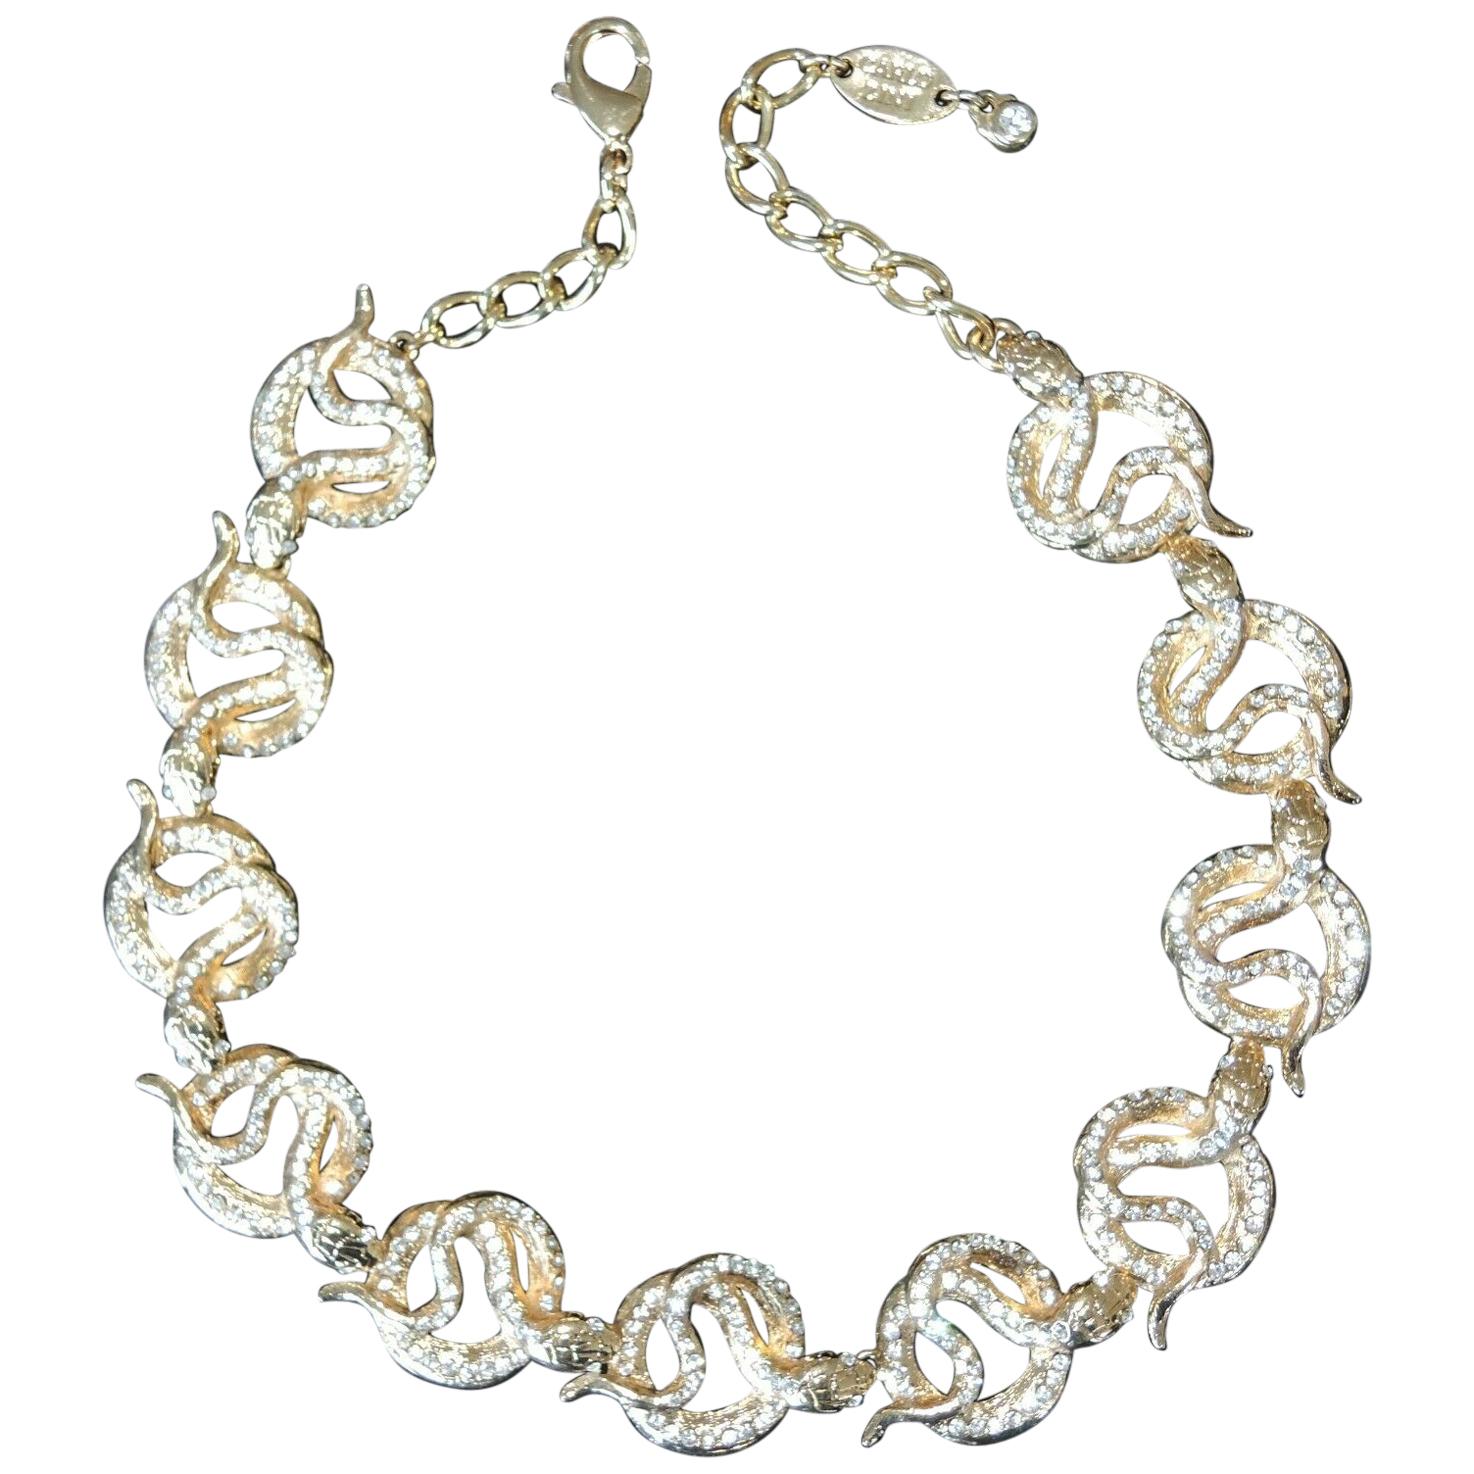 Designer Signed Carlo Zini Sparkling Crystal Serpent Snake Link Necklace